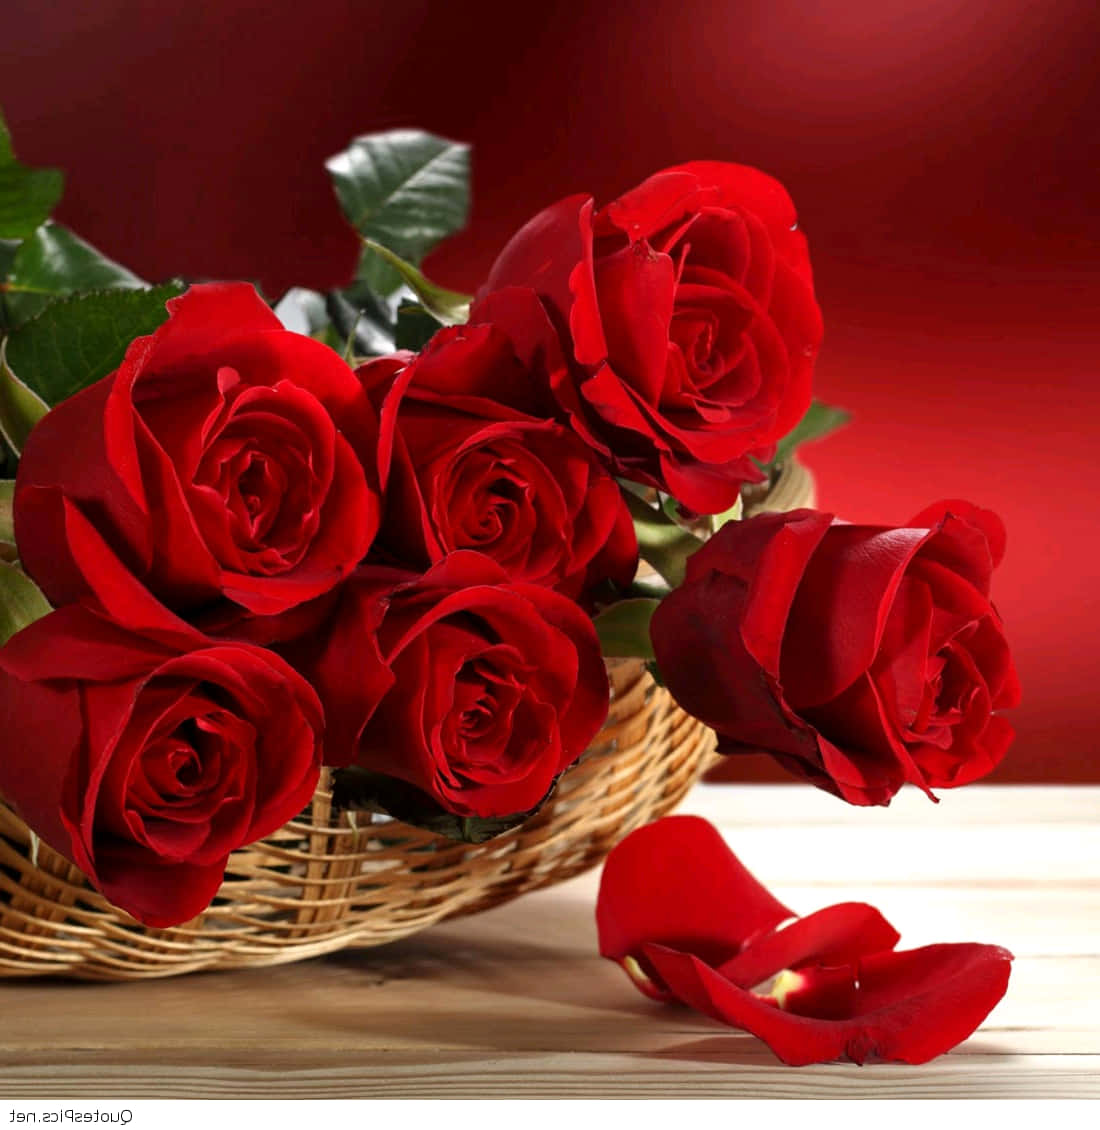 Enchanting Vivid Red Roses